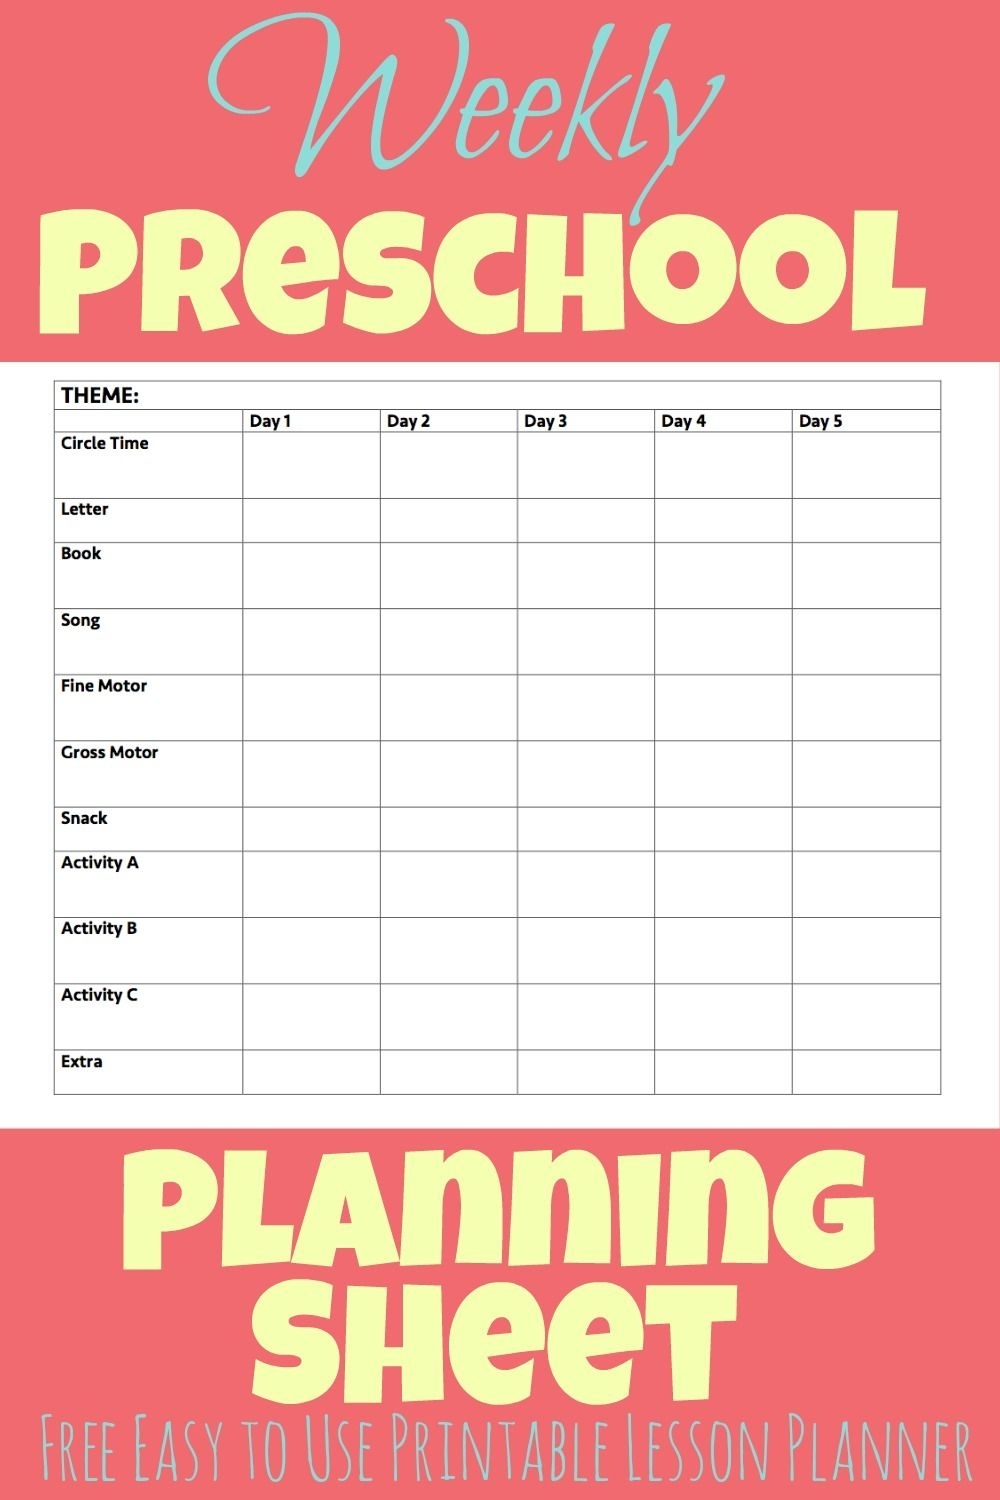 Printable Preschool Week Planning Sheet - More Excellent Me Pre K Calendar Template